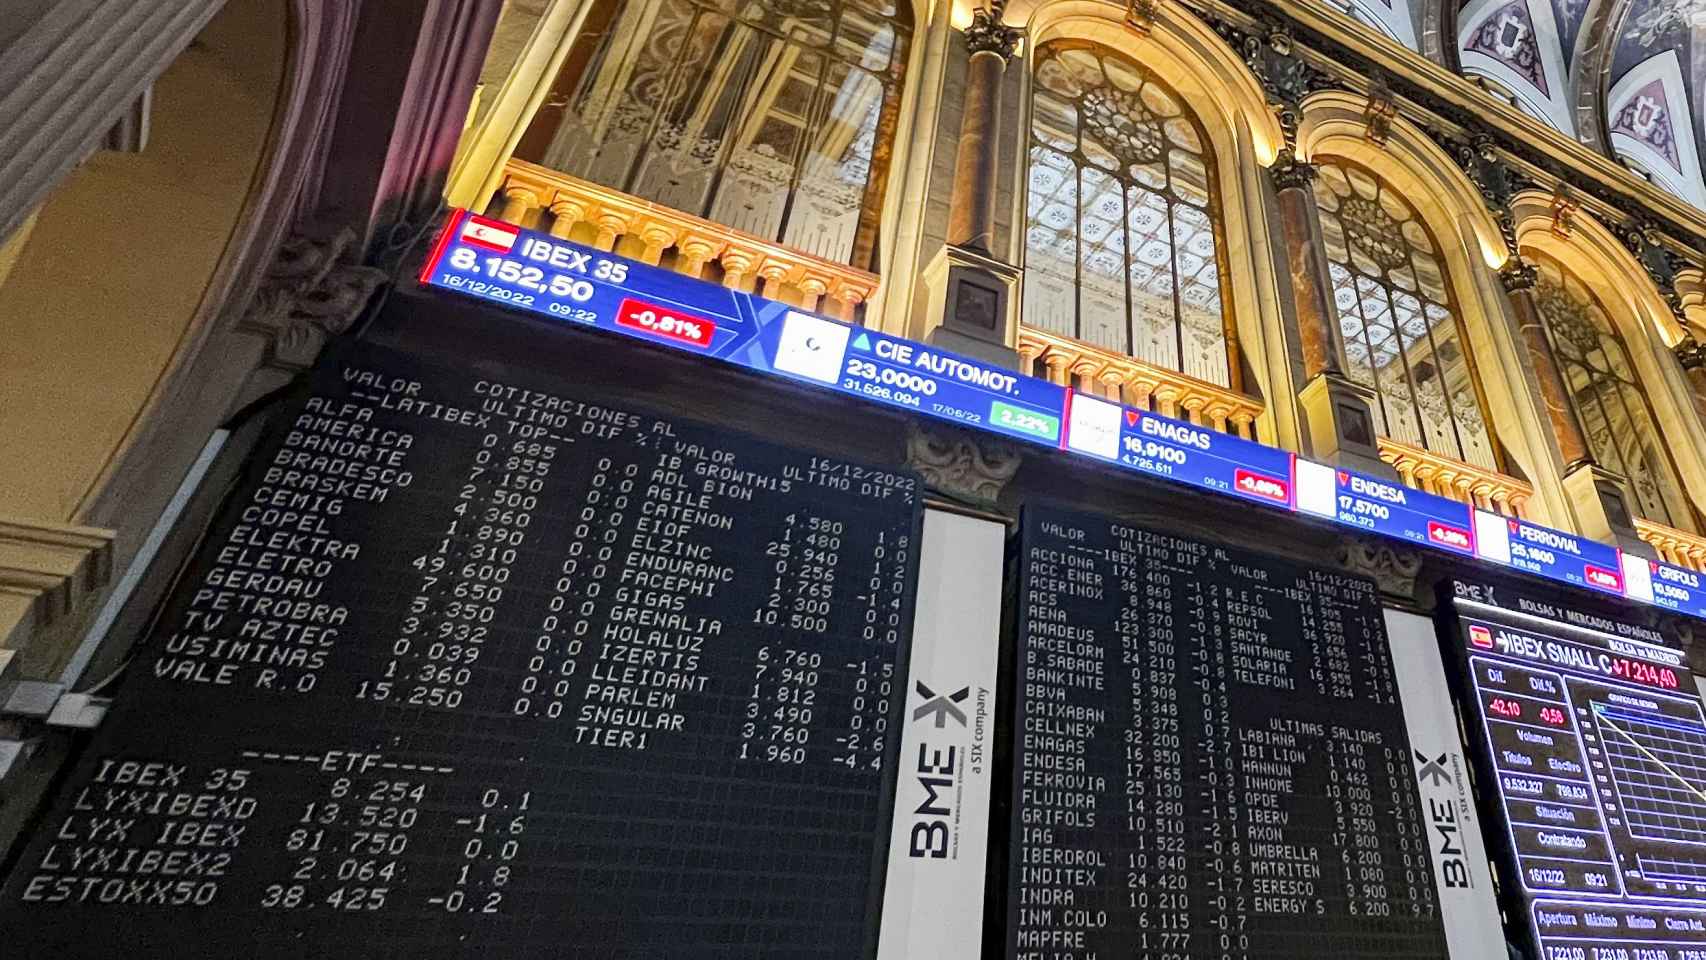 Panel de la Bolsa de Madrid donde aparecen las compañías cotizadas en el Latibex.